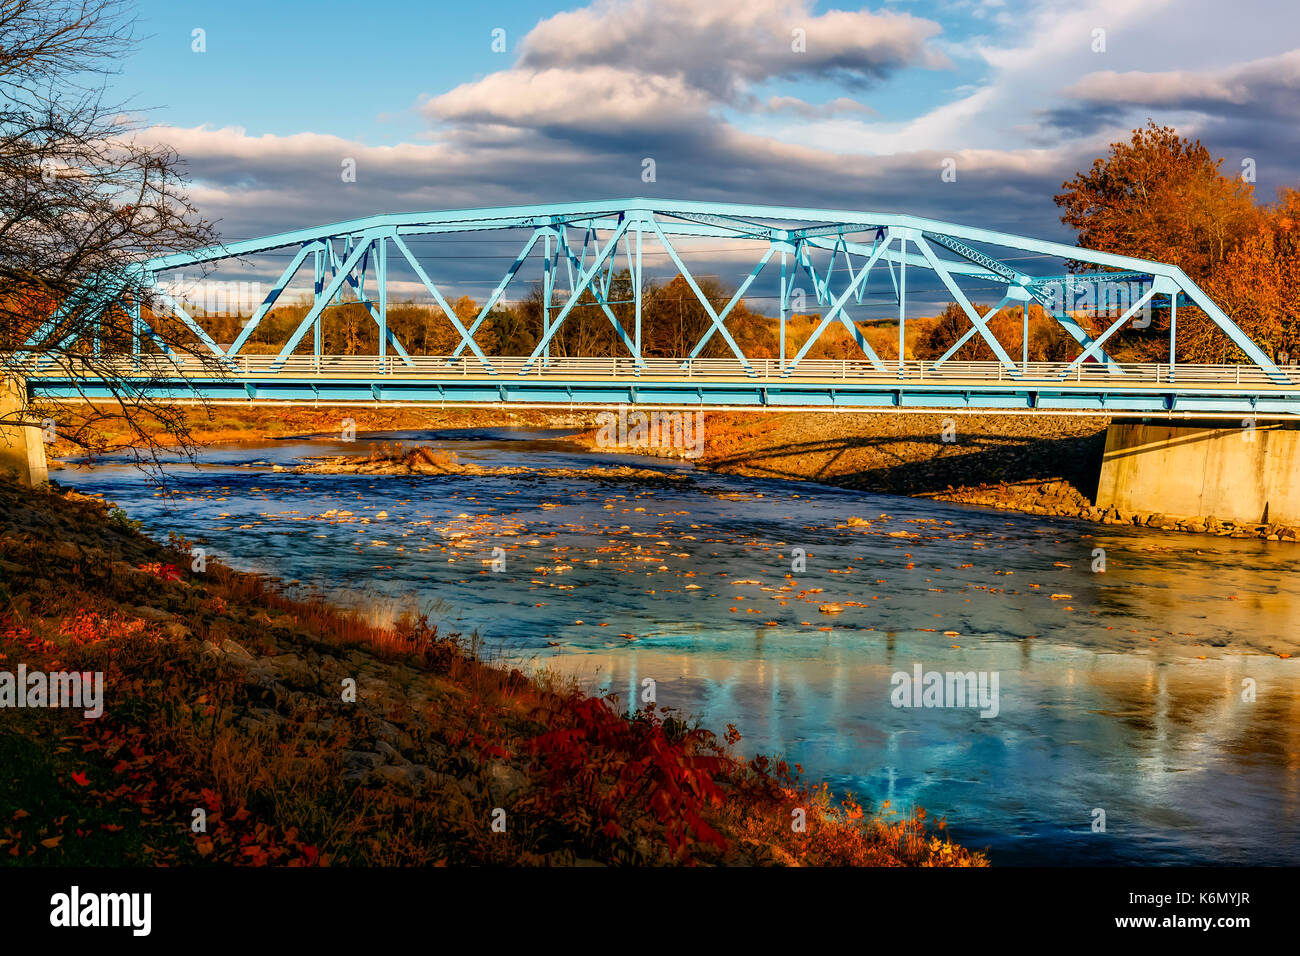 Rondout Creek Bridge - pont bleu sur le Rondout Creek dans la région de Rosedale, Ulster County, New York. Près de 80 ans le vieux pont a été rénové pour t Banque D'Images